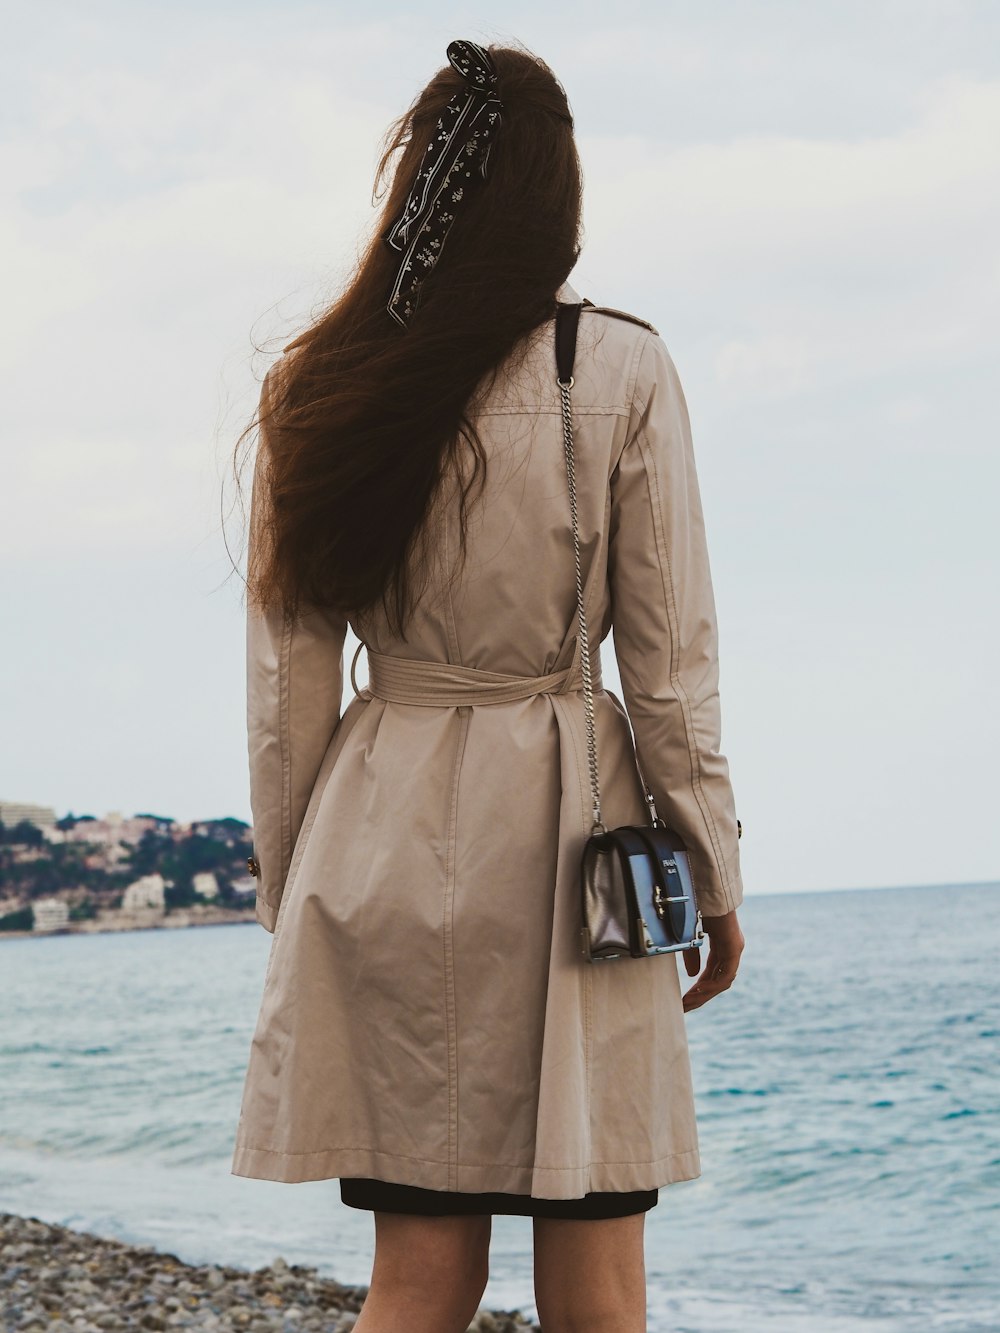 femme en manteau brun debout près de la mer pendant la journée